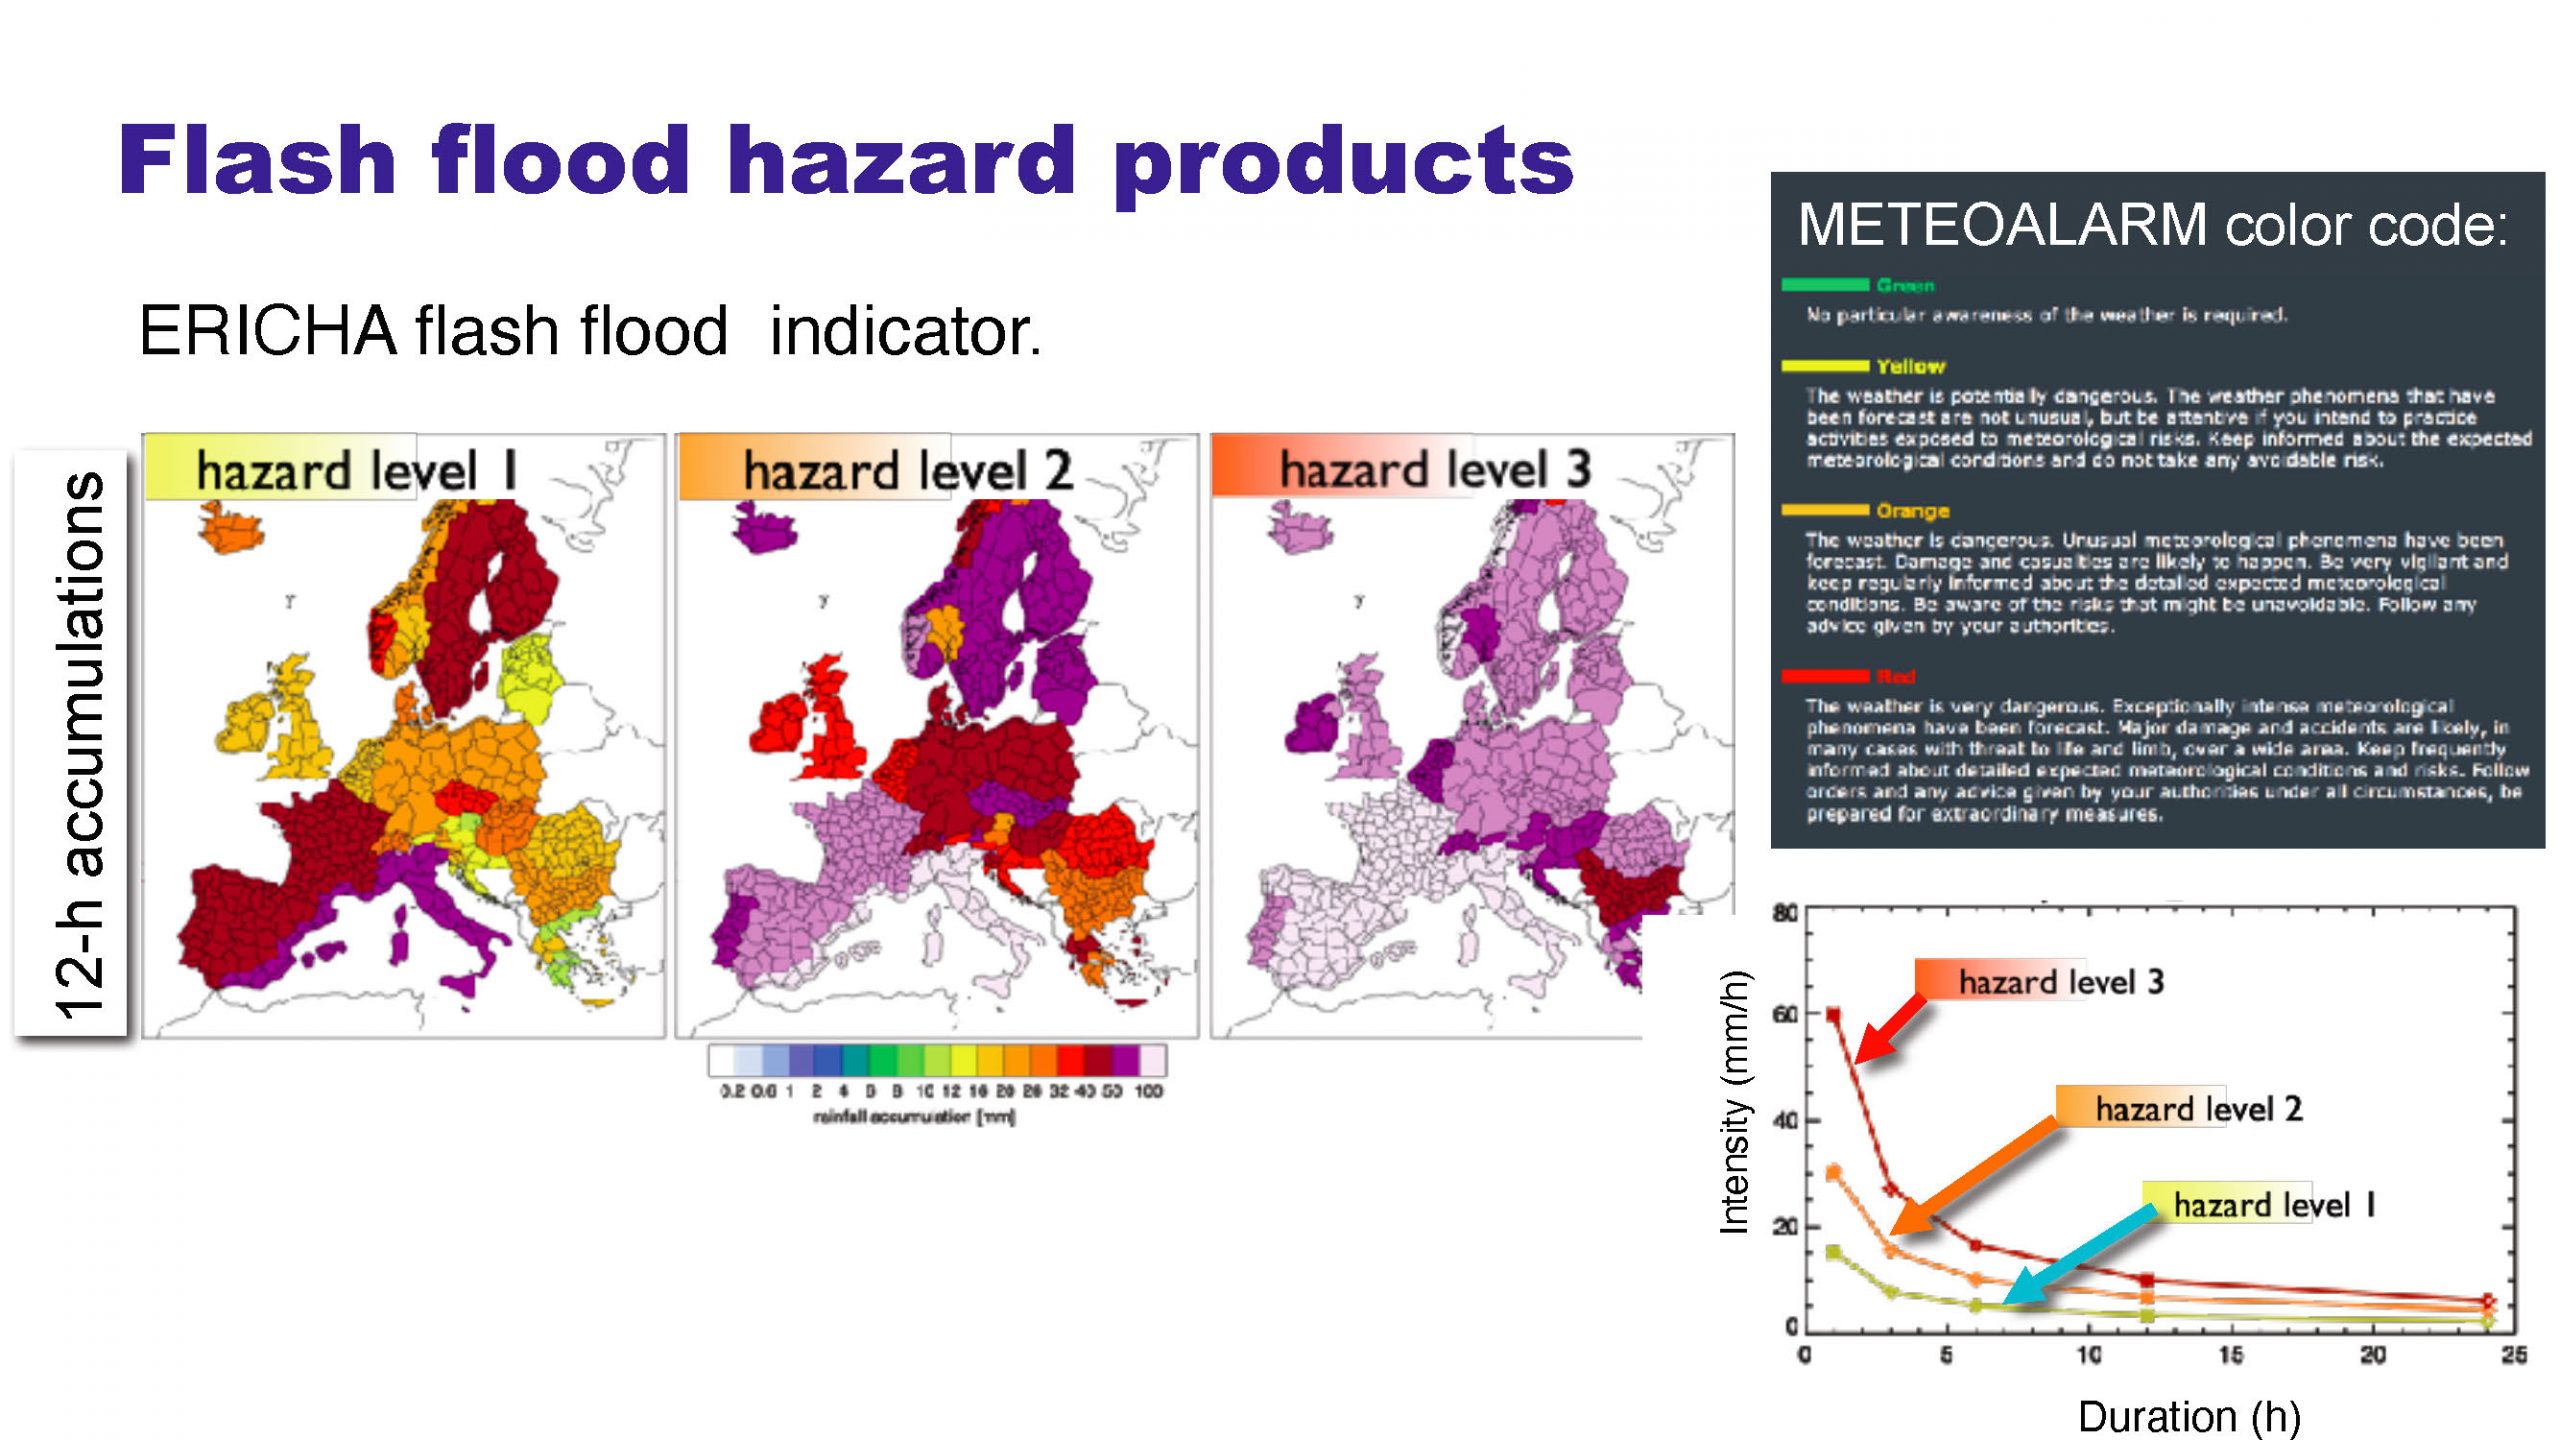 SMUFF: Nuevos instrumentos para lograr mejores predicciones de los impactos derivados de lluvias intensas